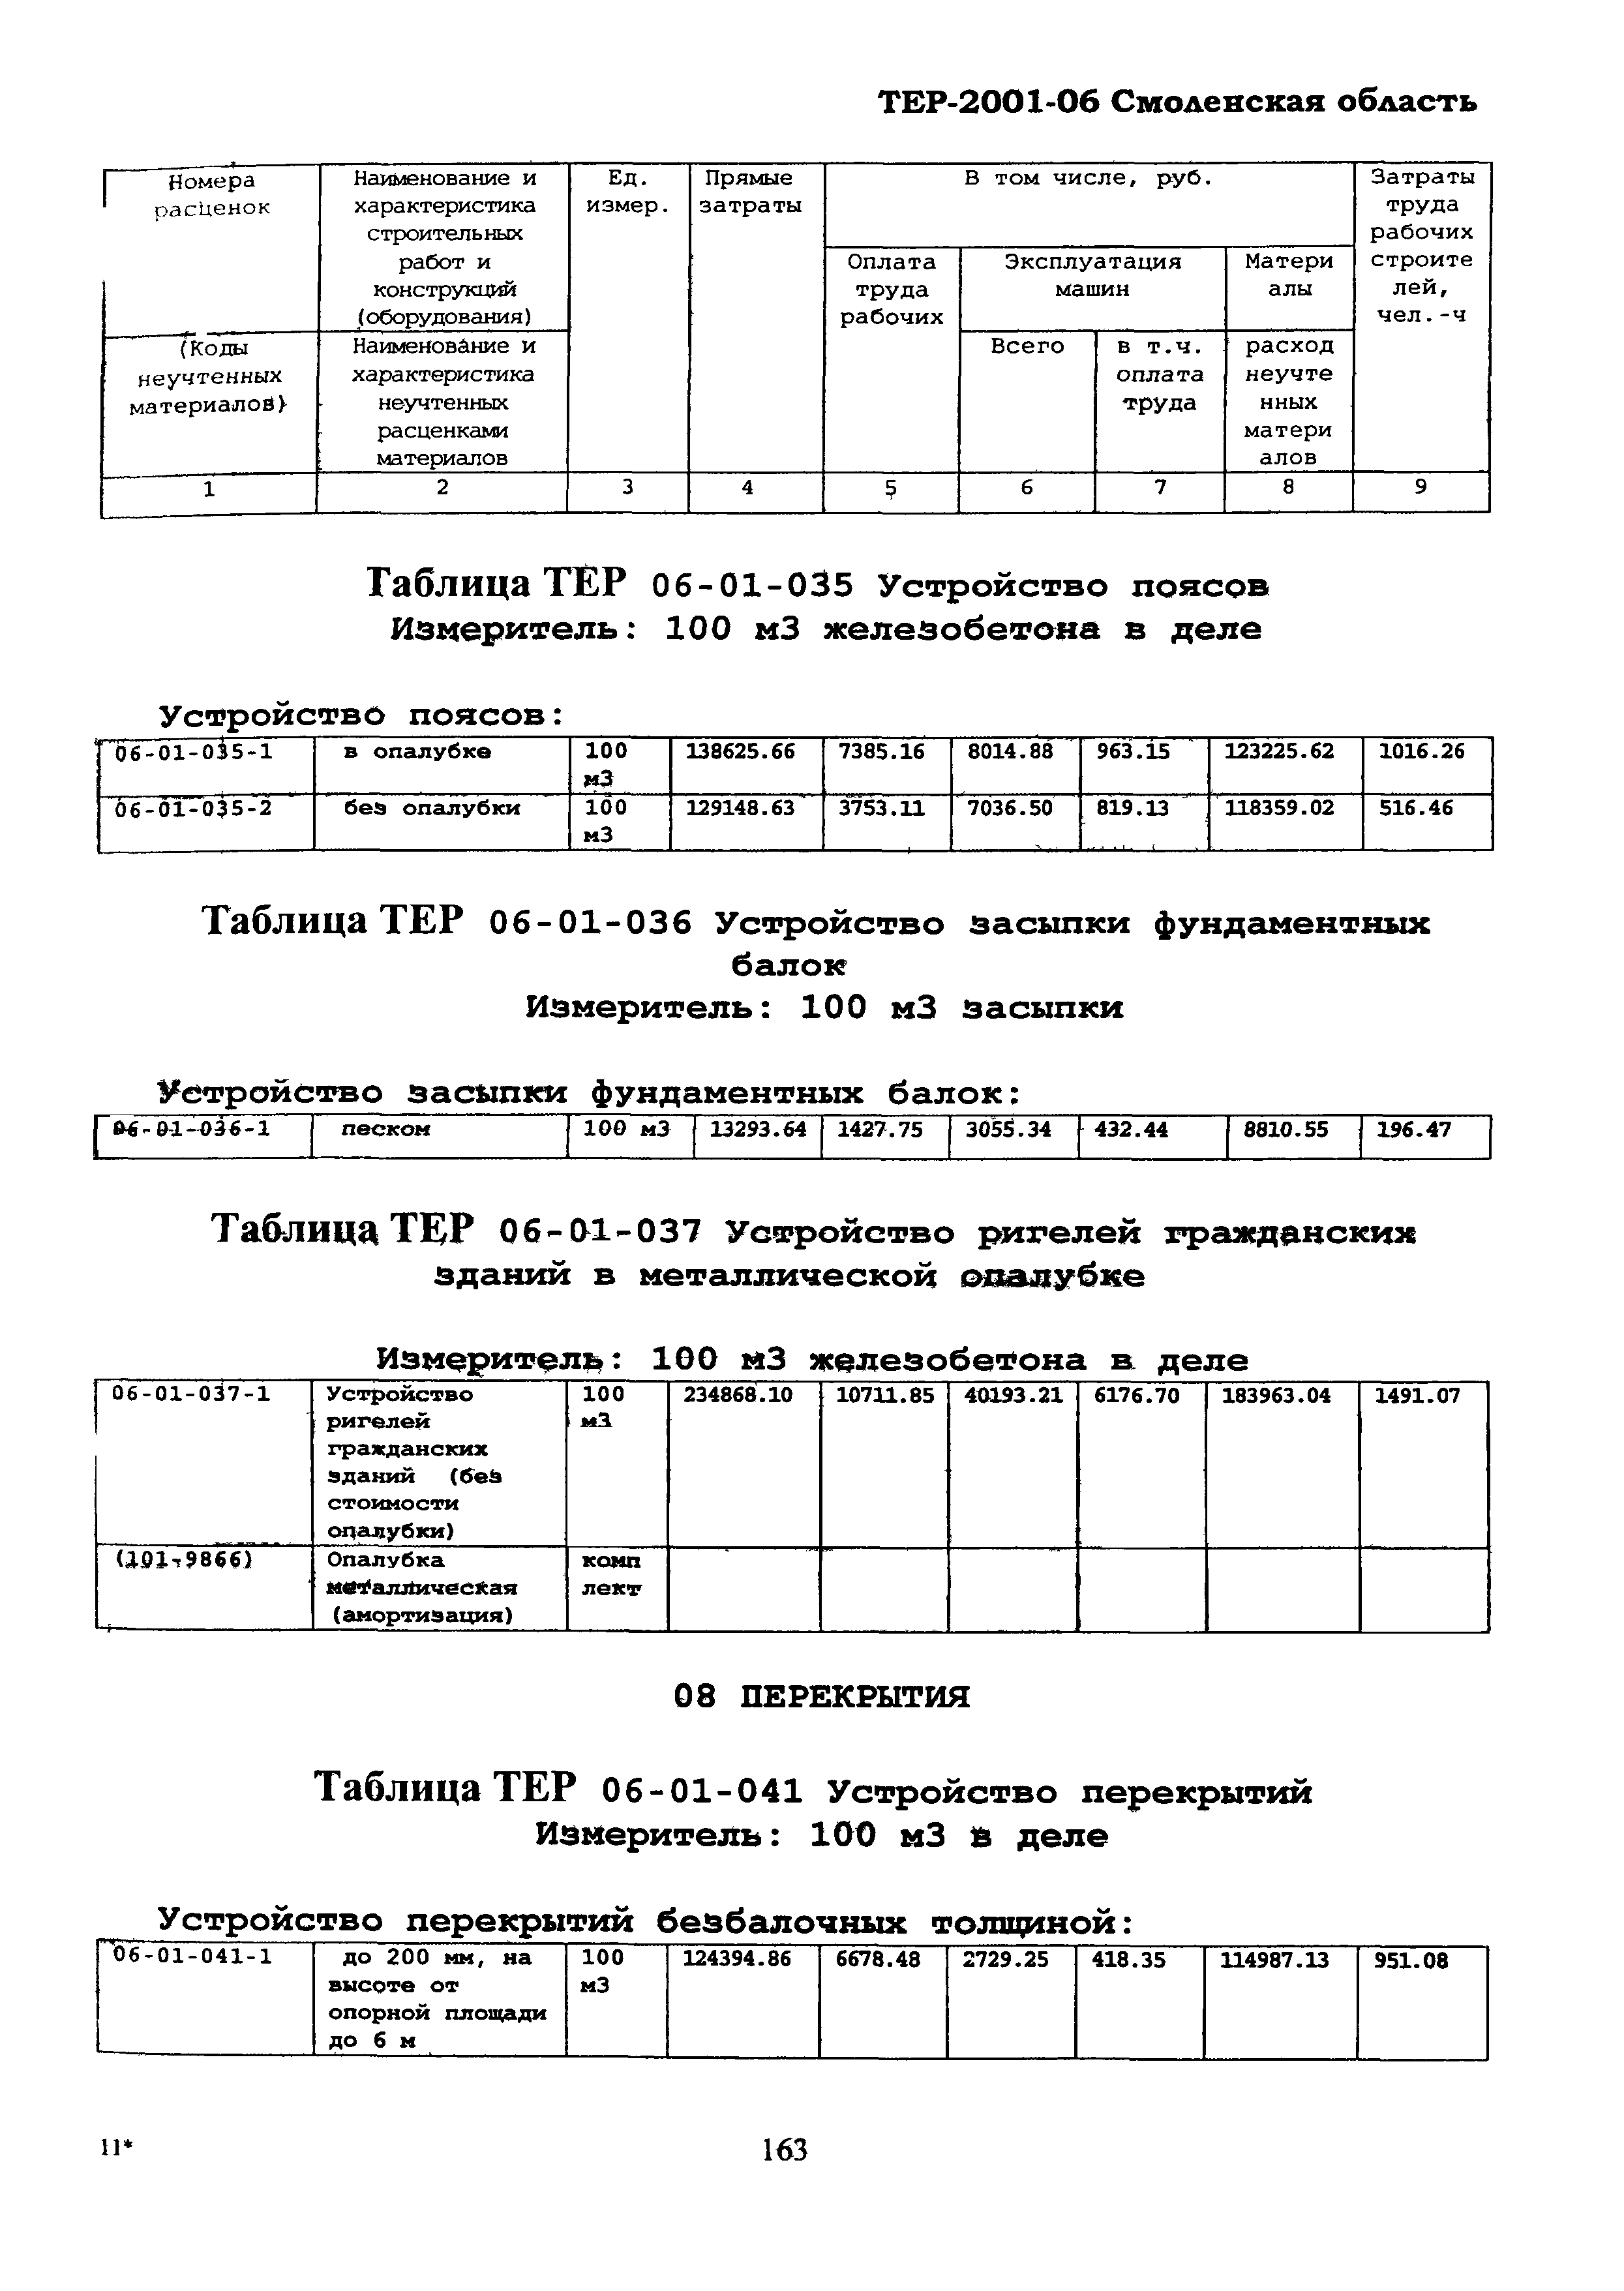 ТЕР Смоленская область 2001-06